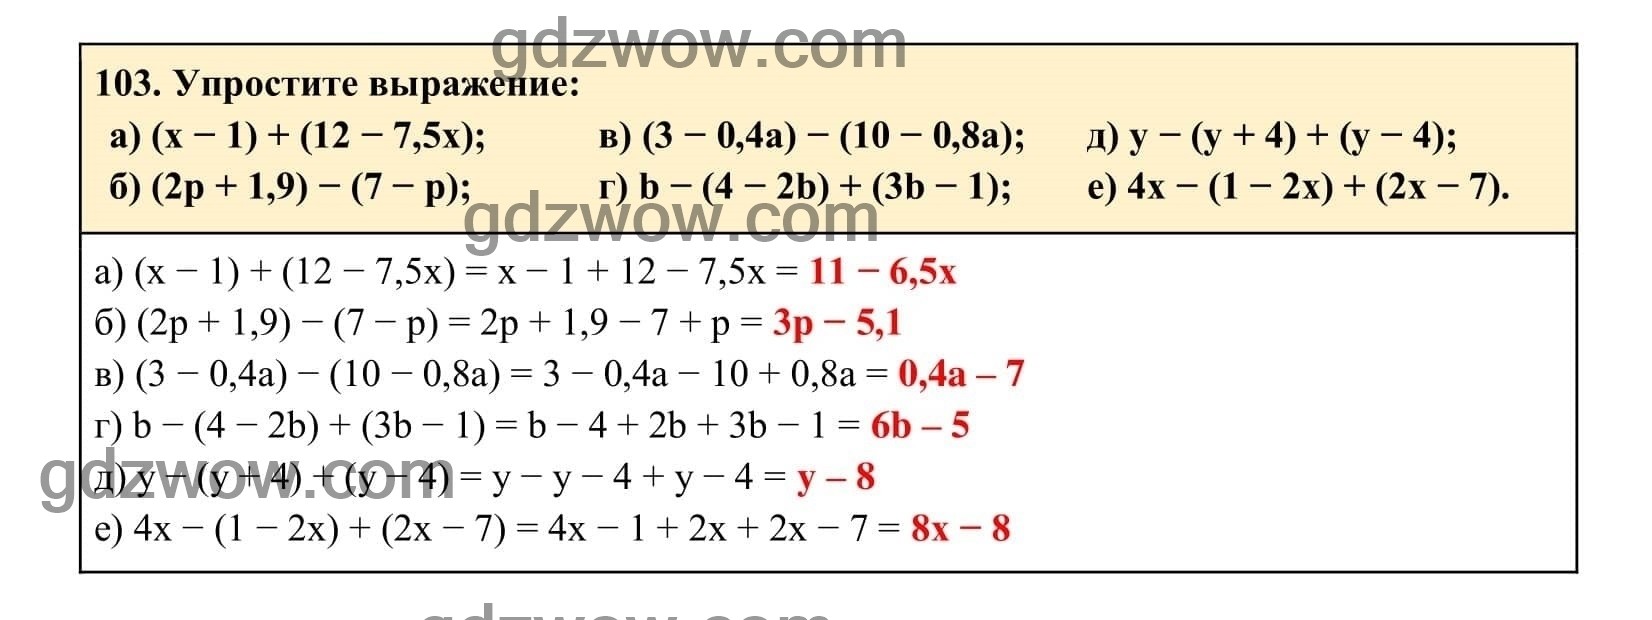 Упражнение 103 - ГДЗ по Алгебре 7 класс Учебник Макарычев (решебник) - GDZwow